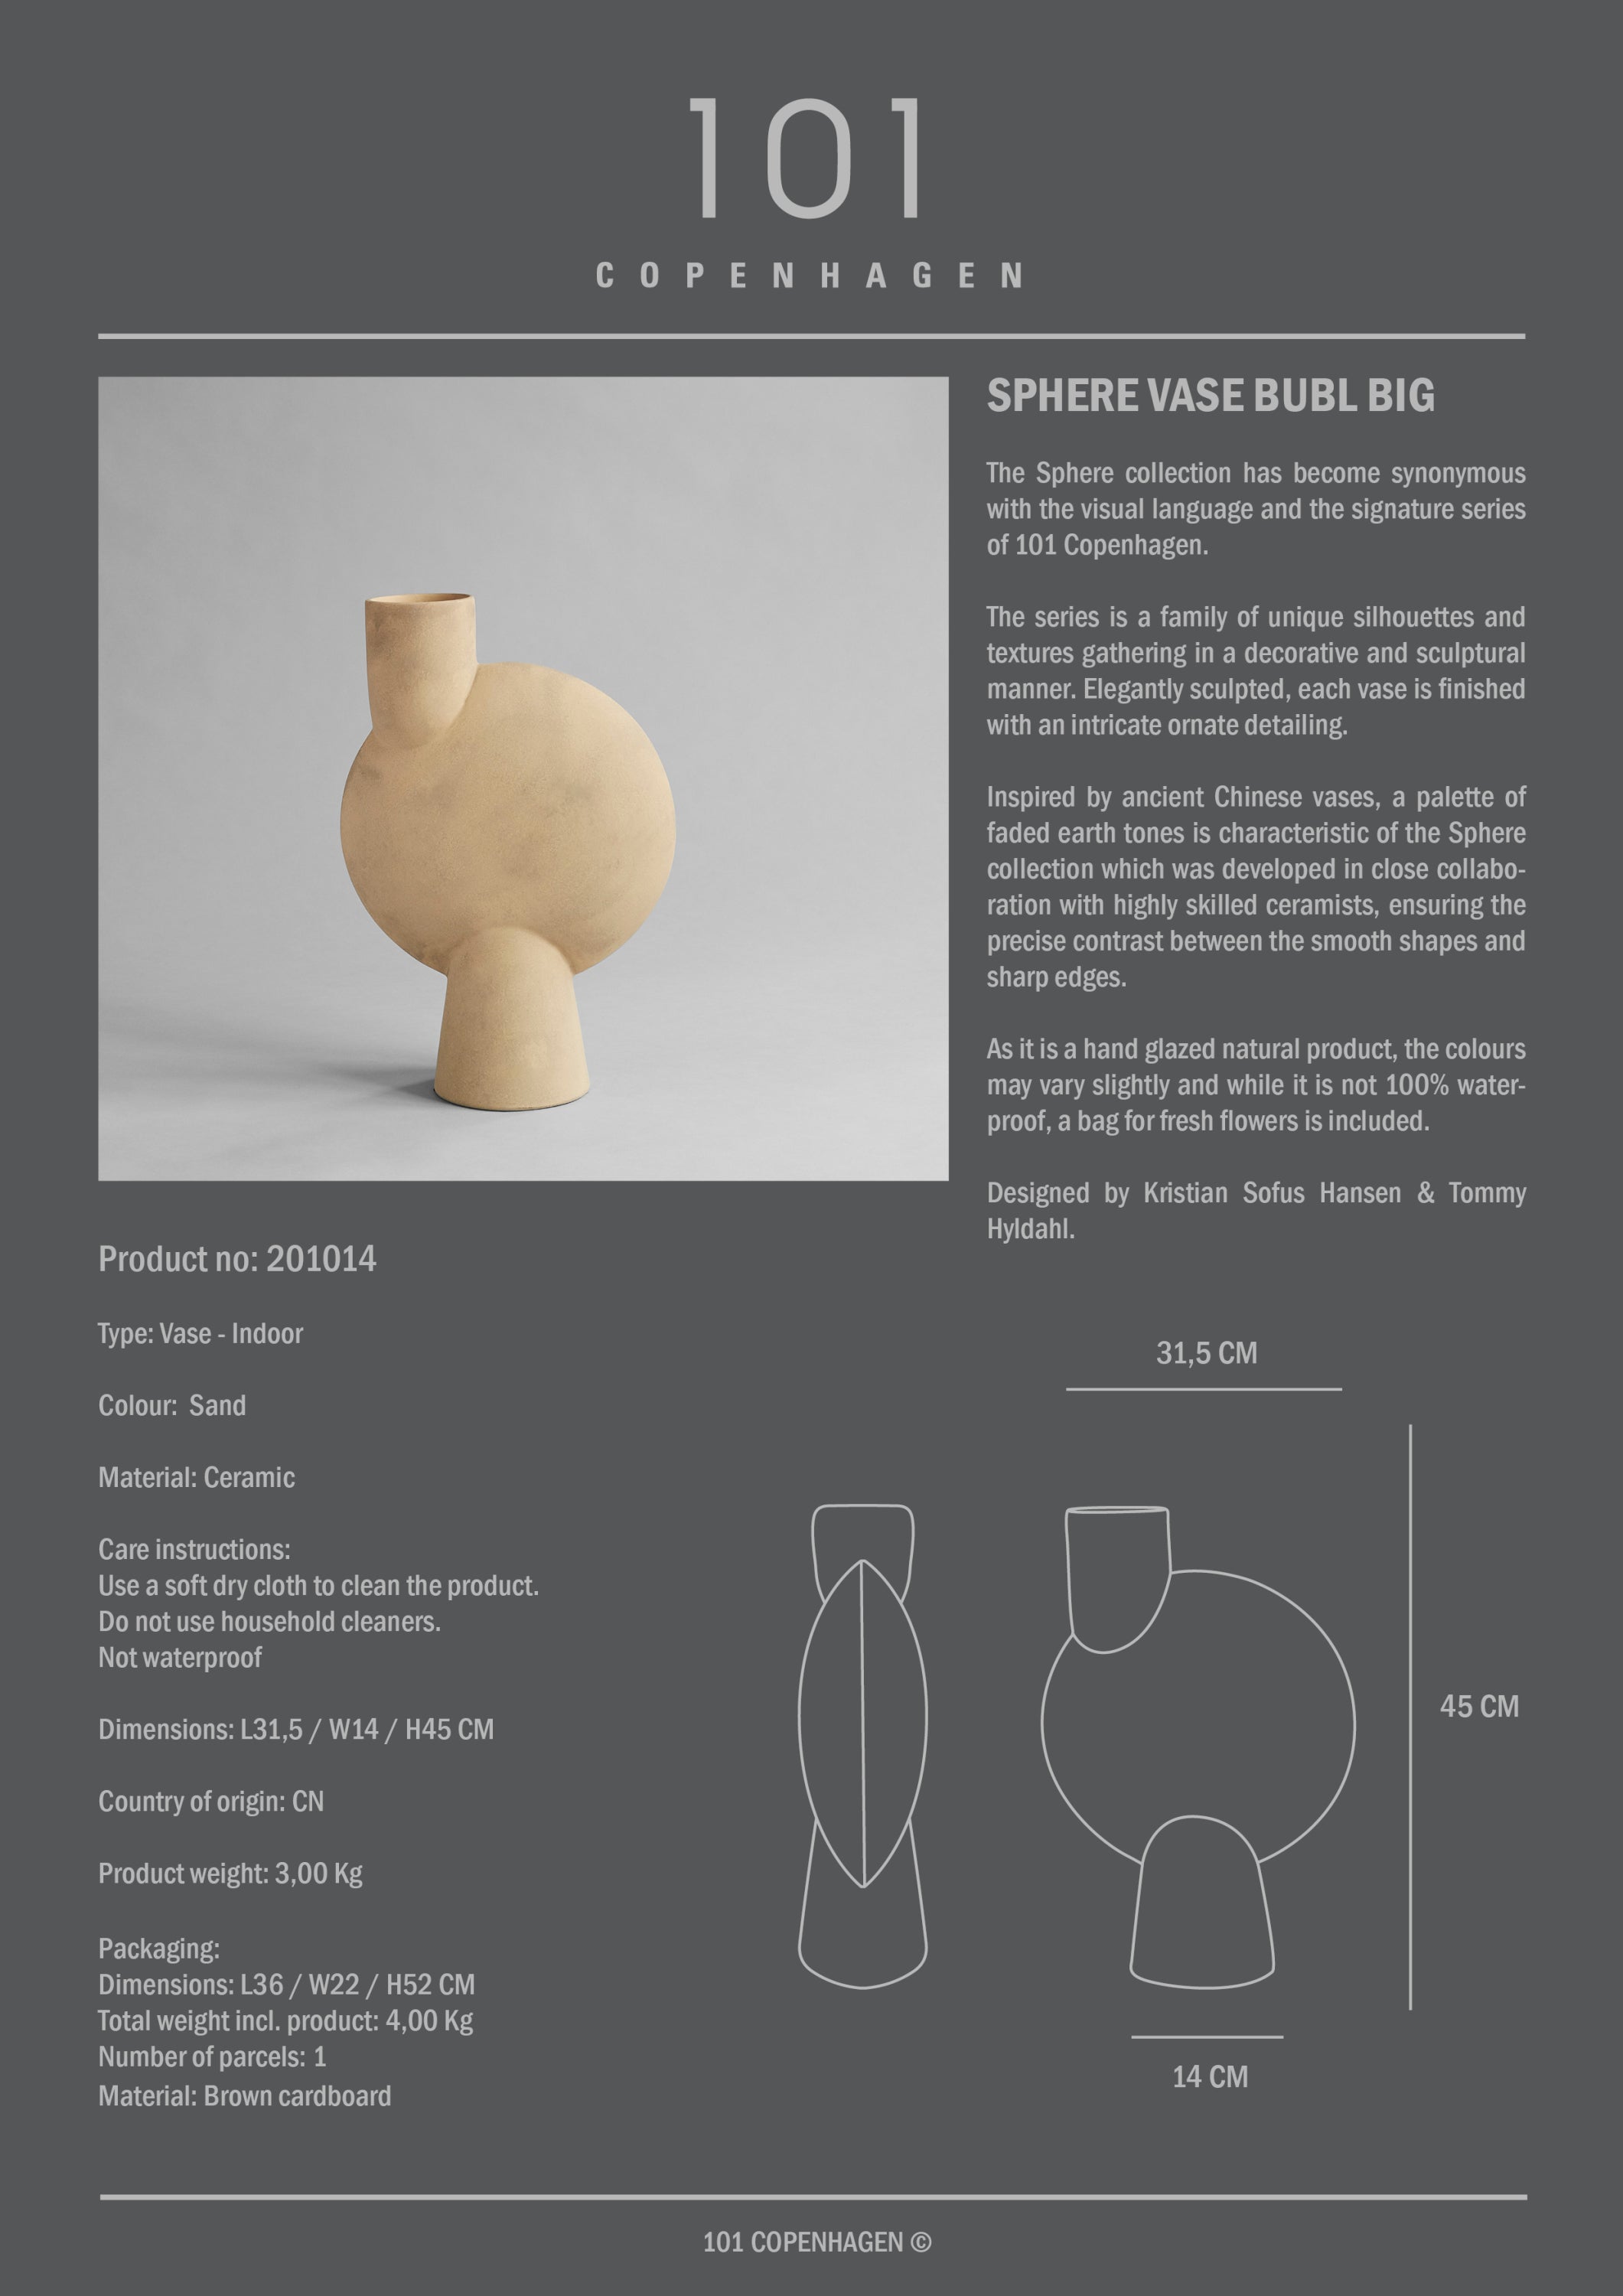 Sphere Vase Bubl Big - Babs The Label